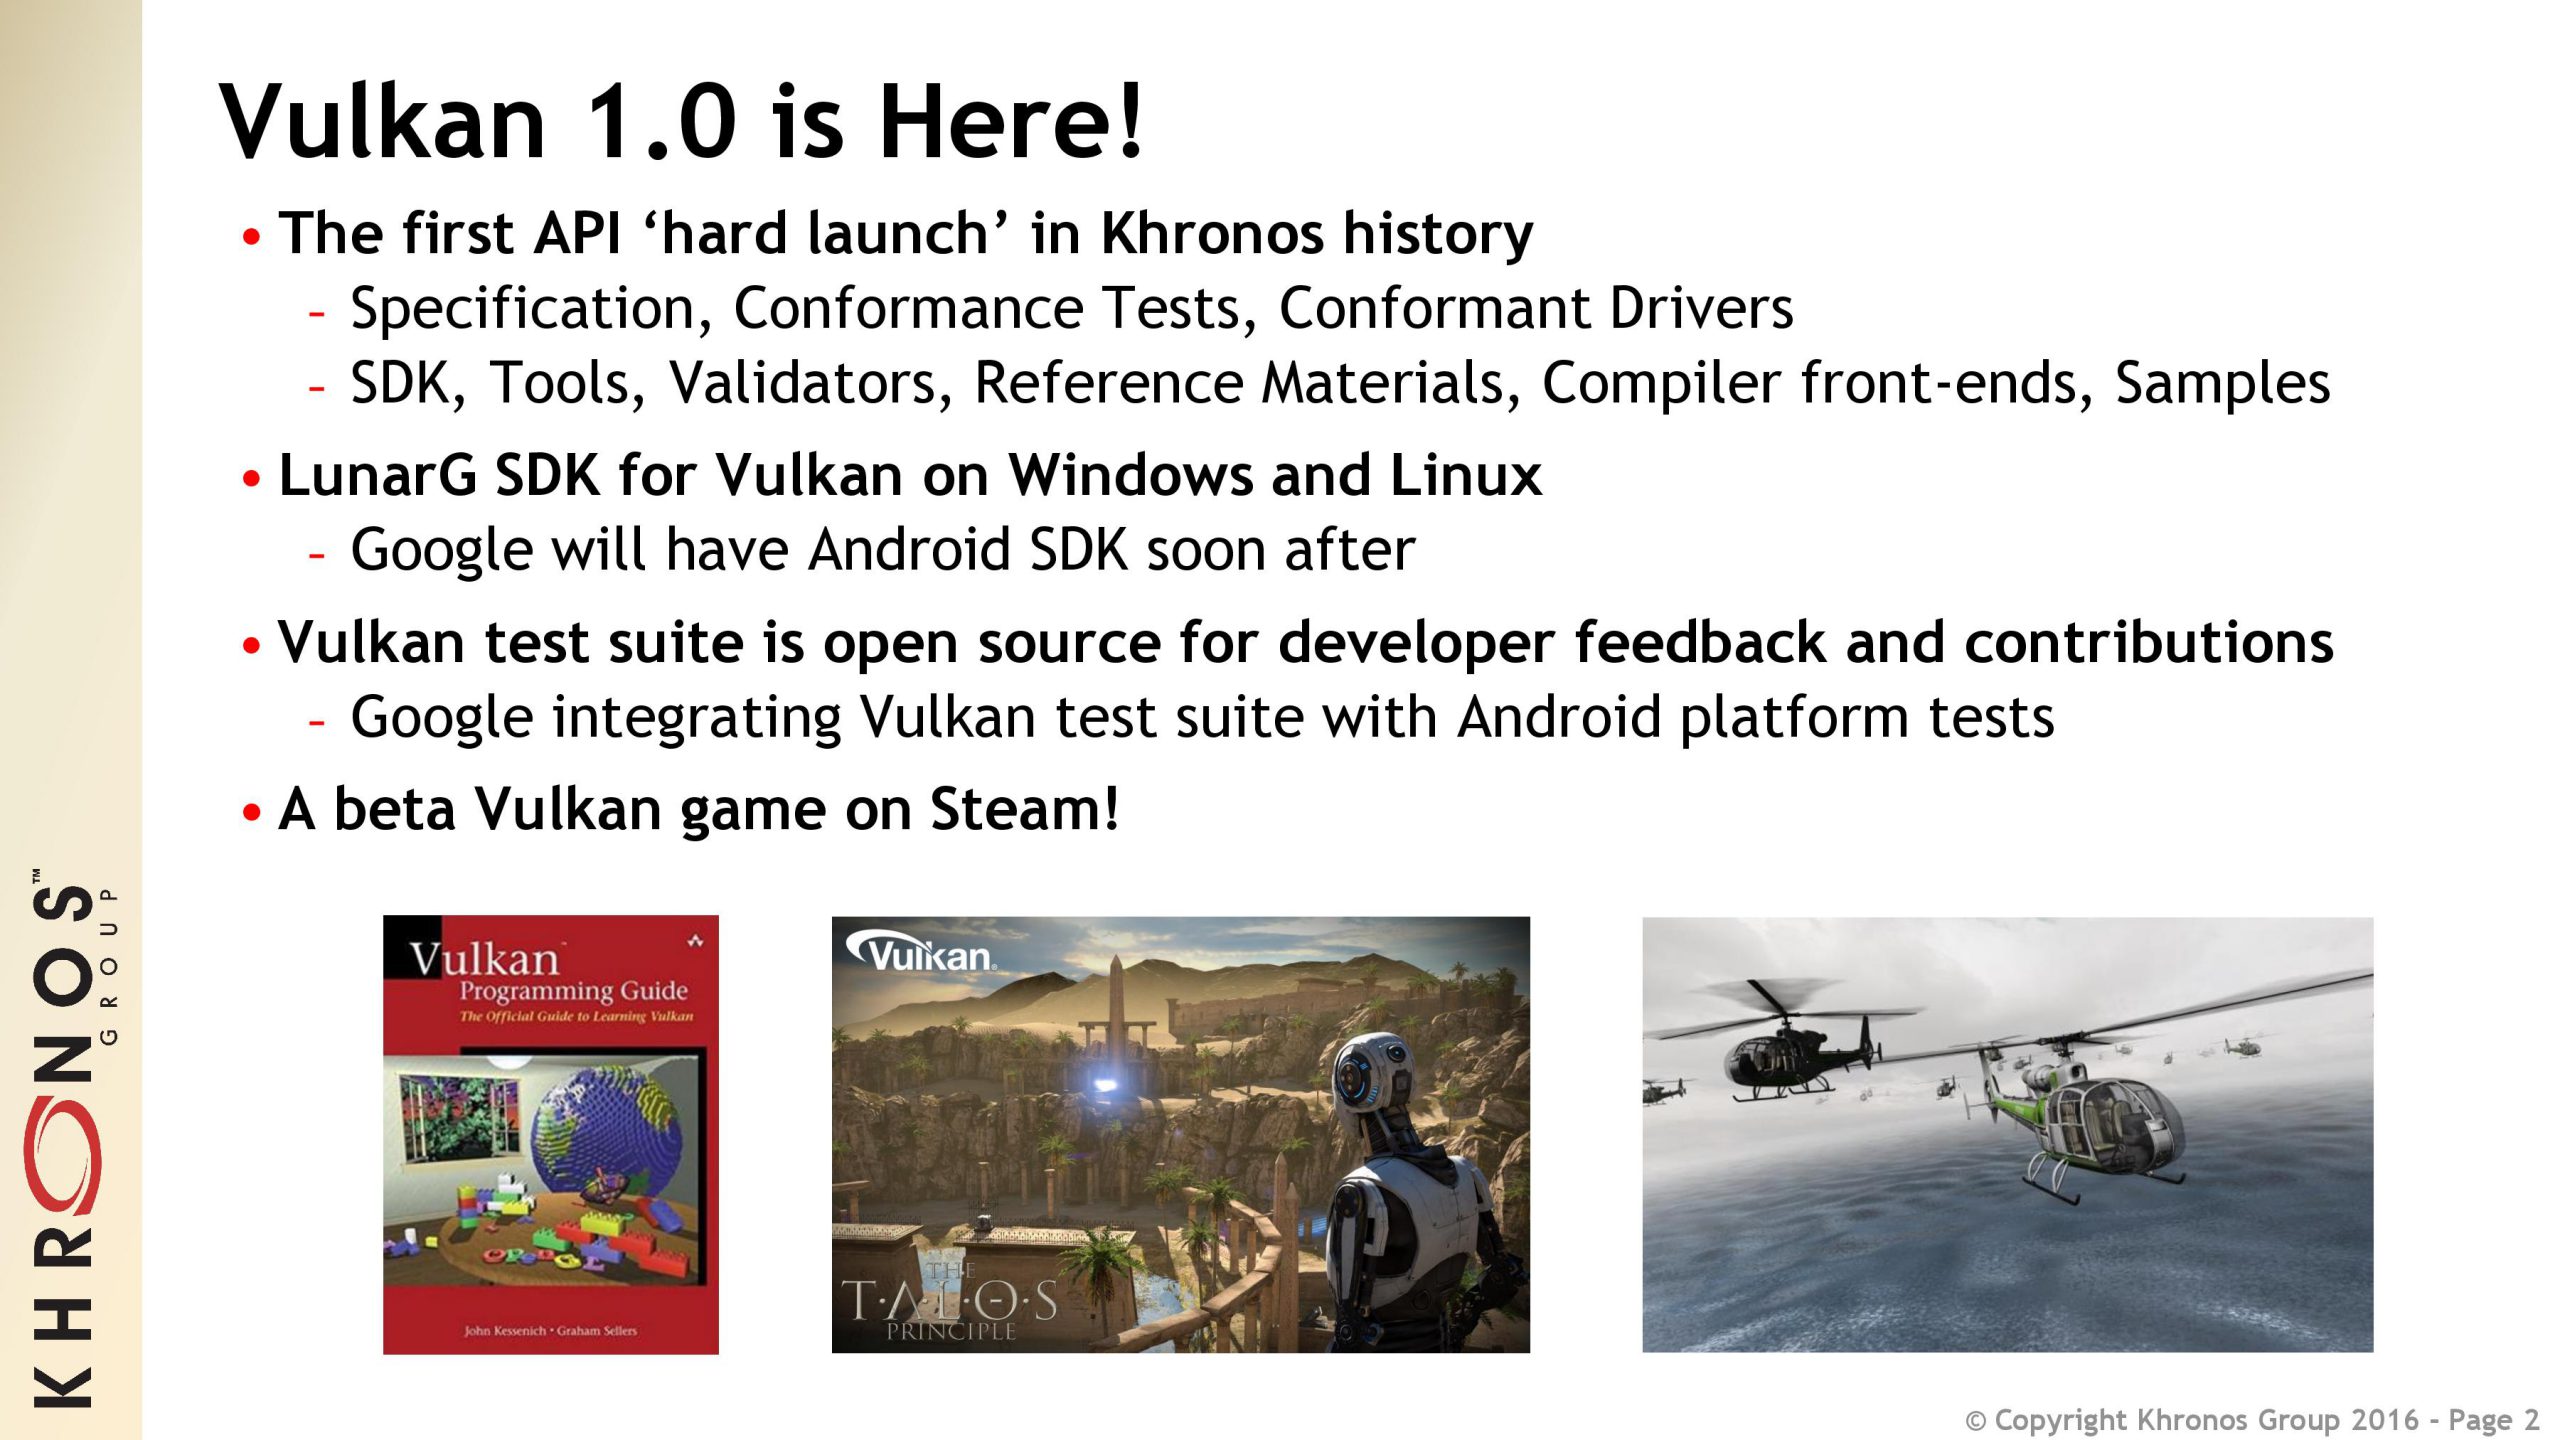 The Vulkan API has been released